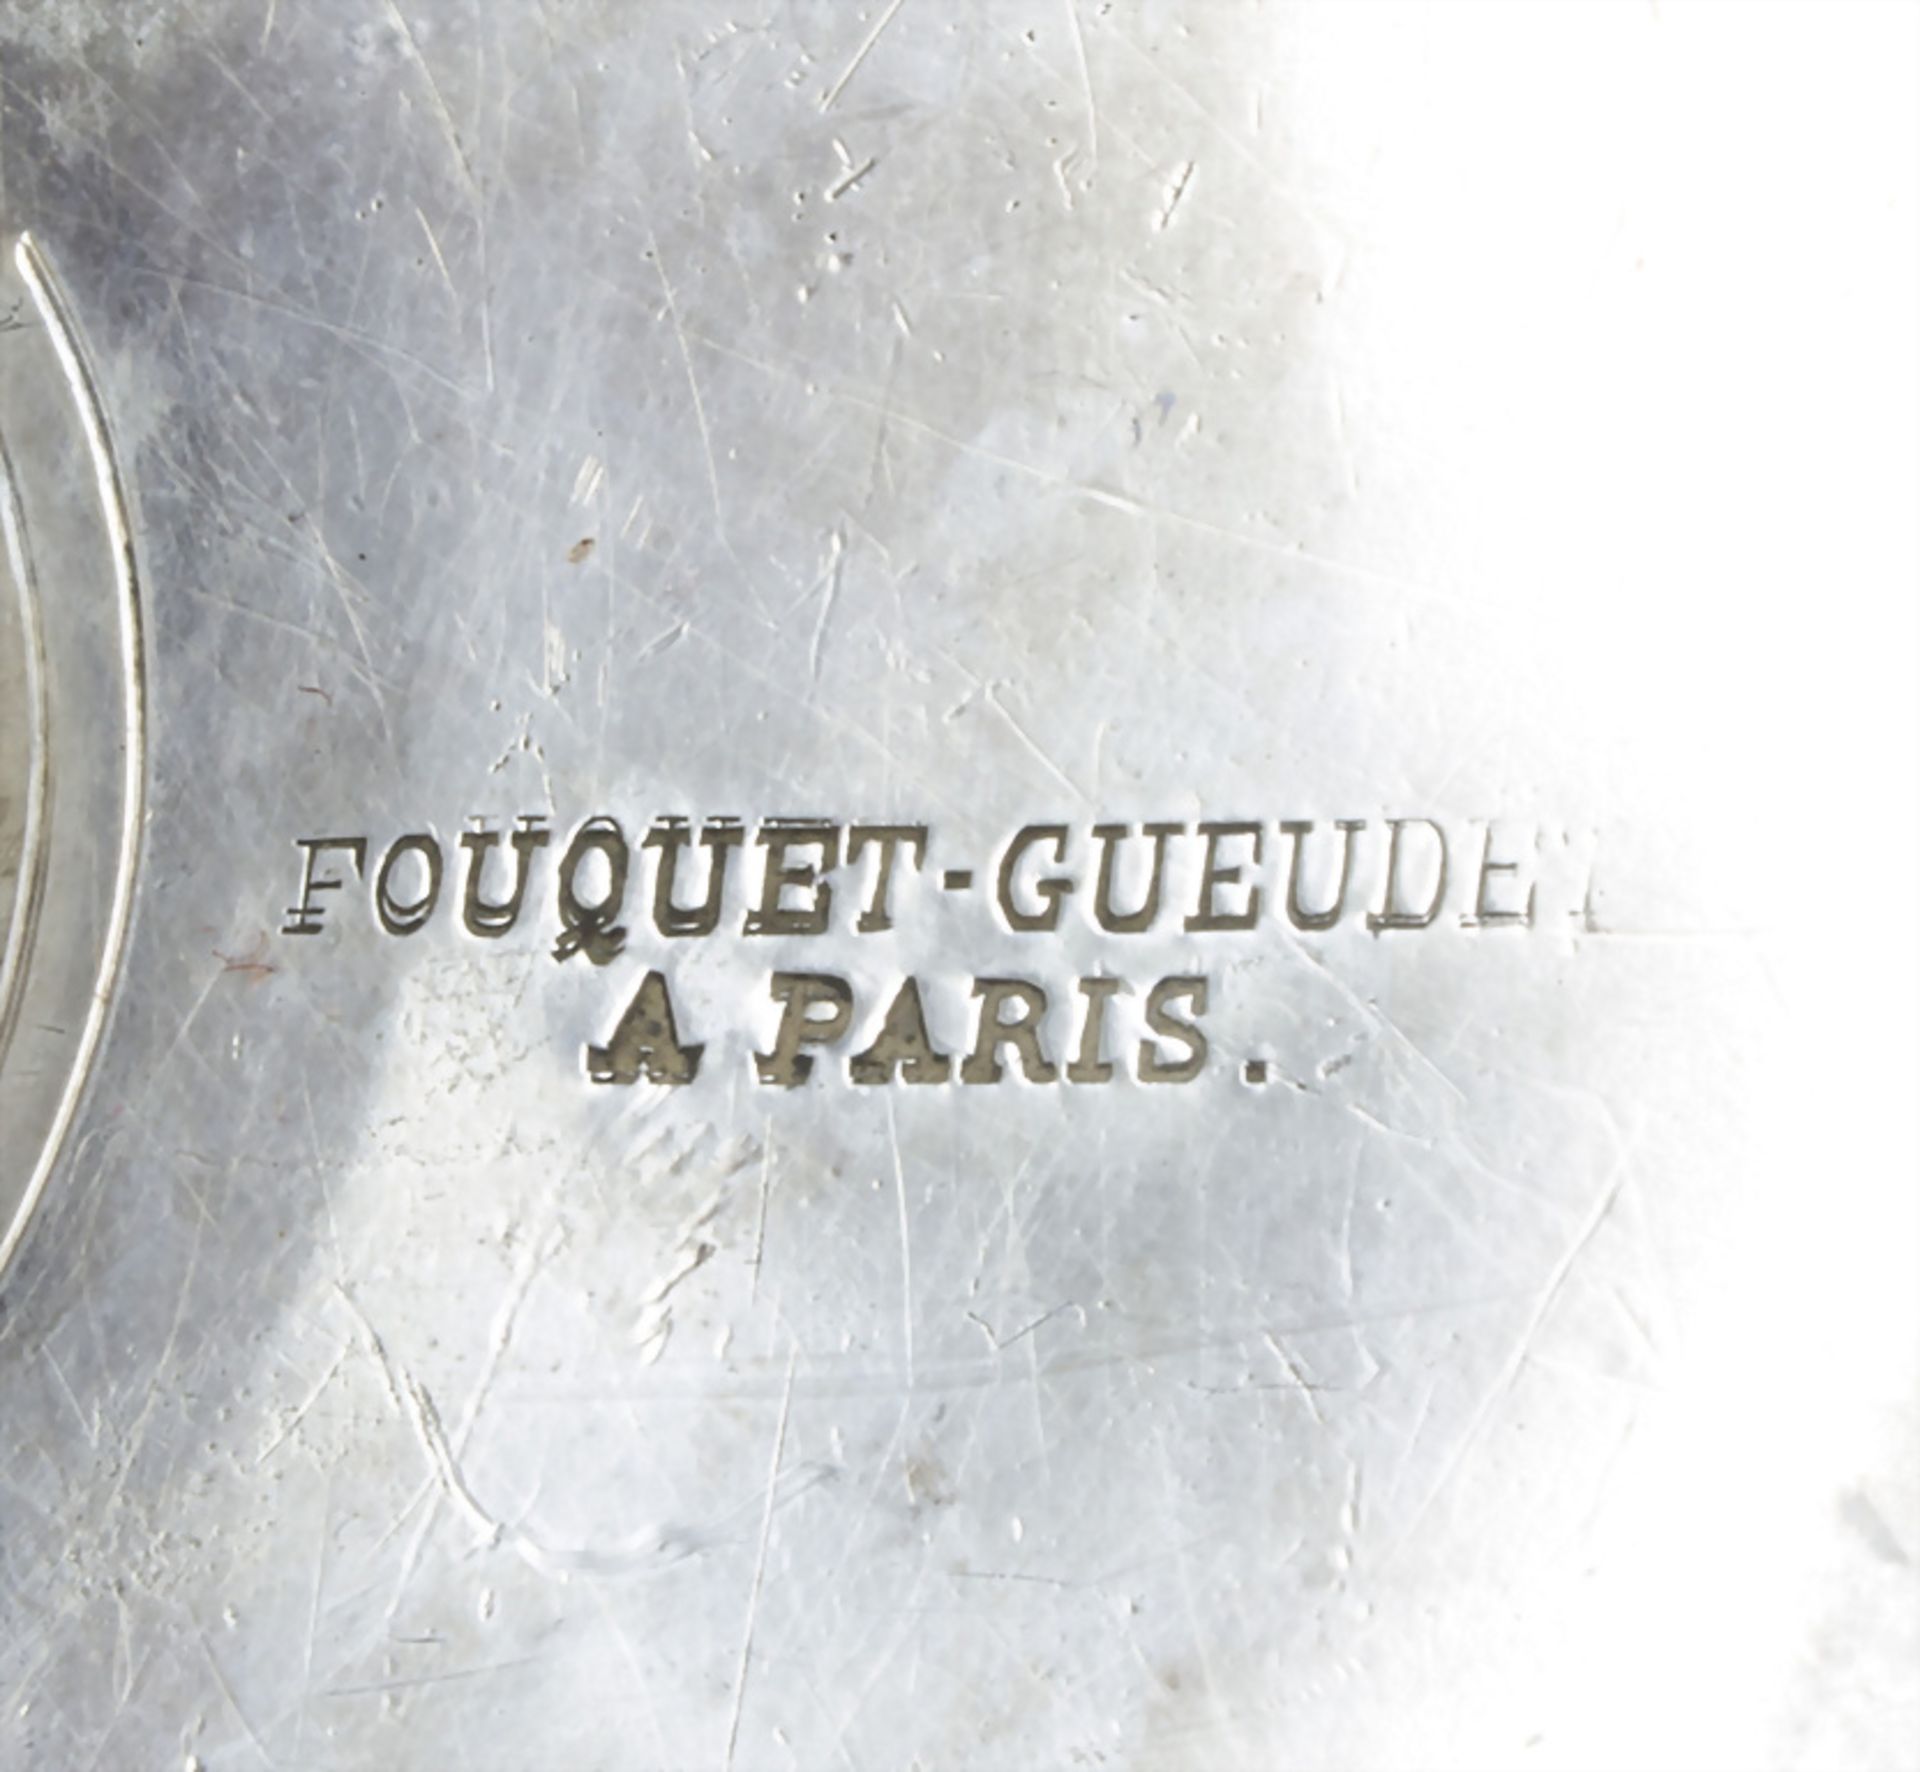 Sauciere auf Presentoir / A silver sauce boat on presenter, Fouquet-Geuedet, Paris, um 1900 - Image 9 of 10